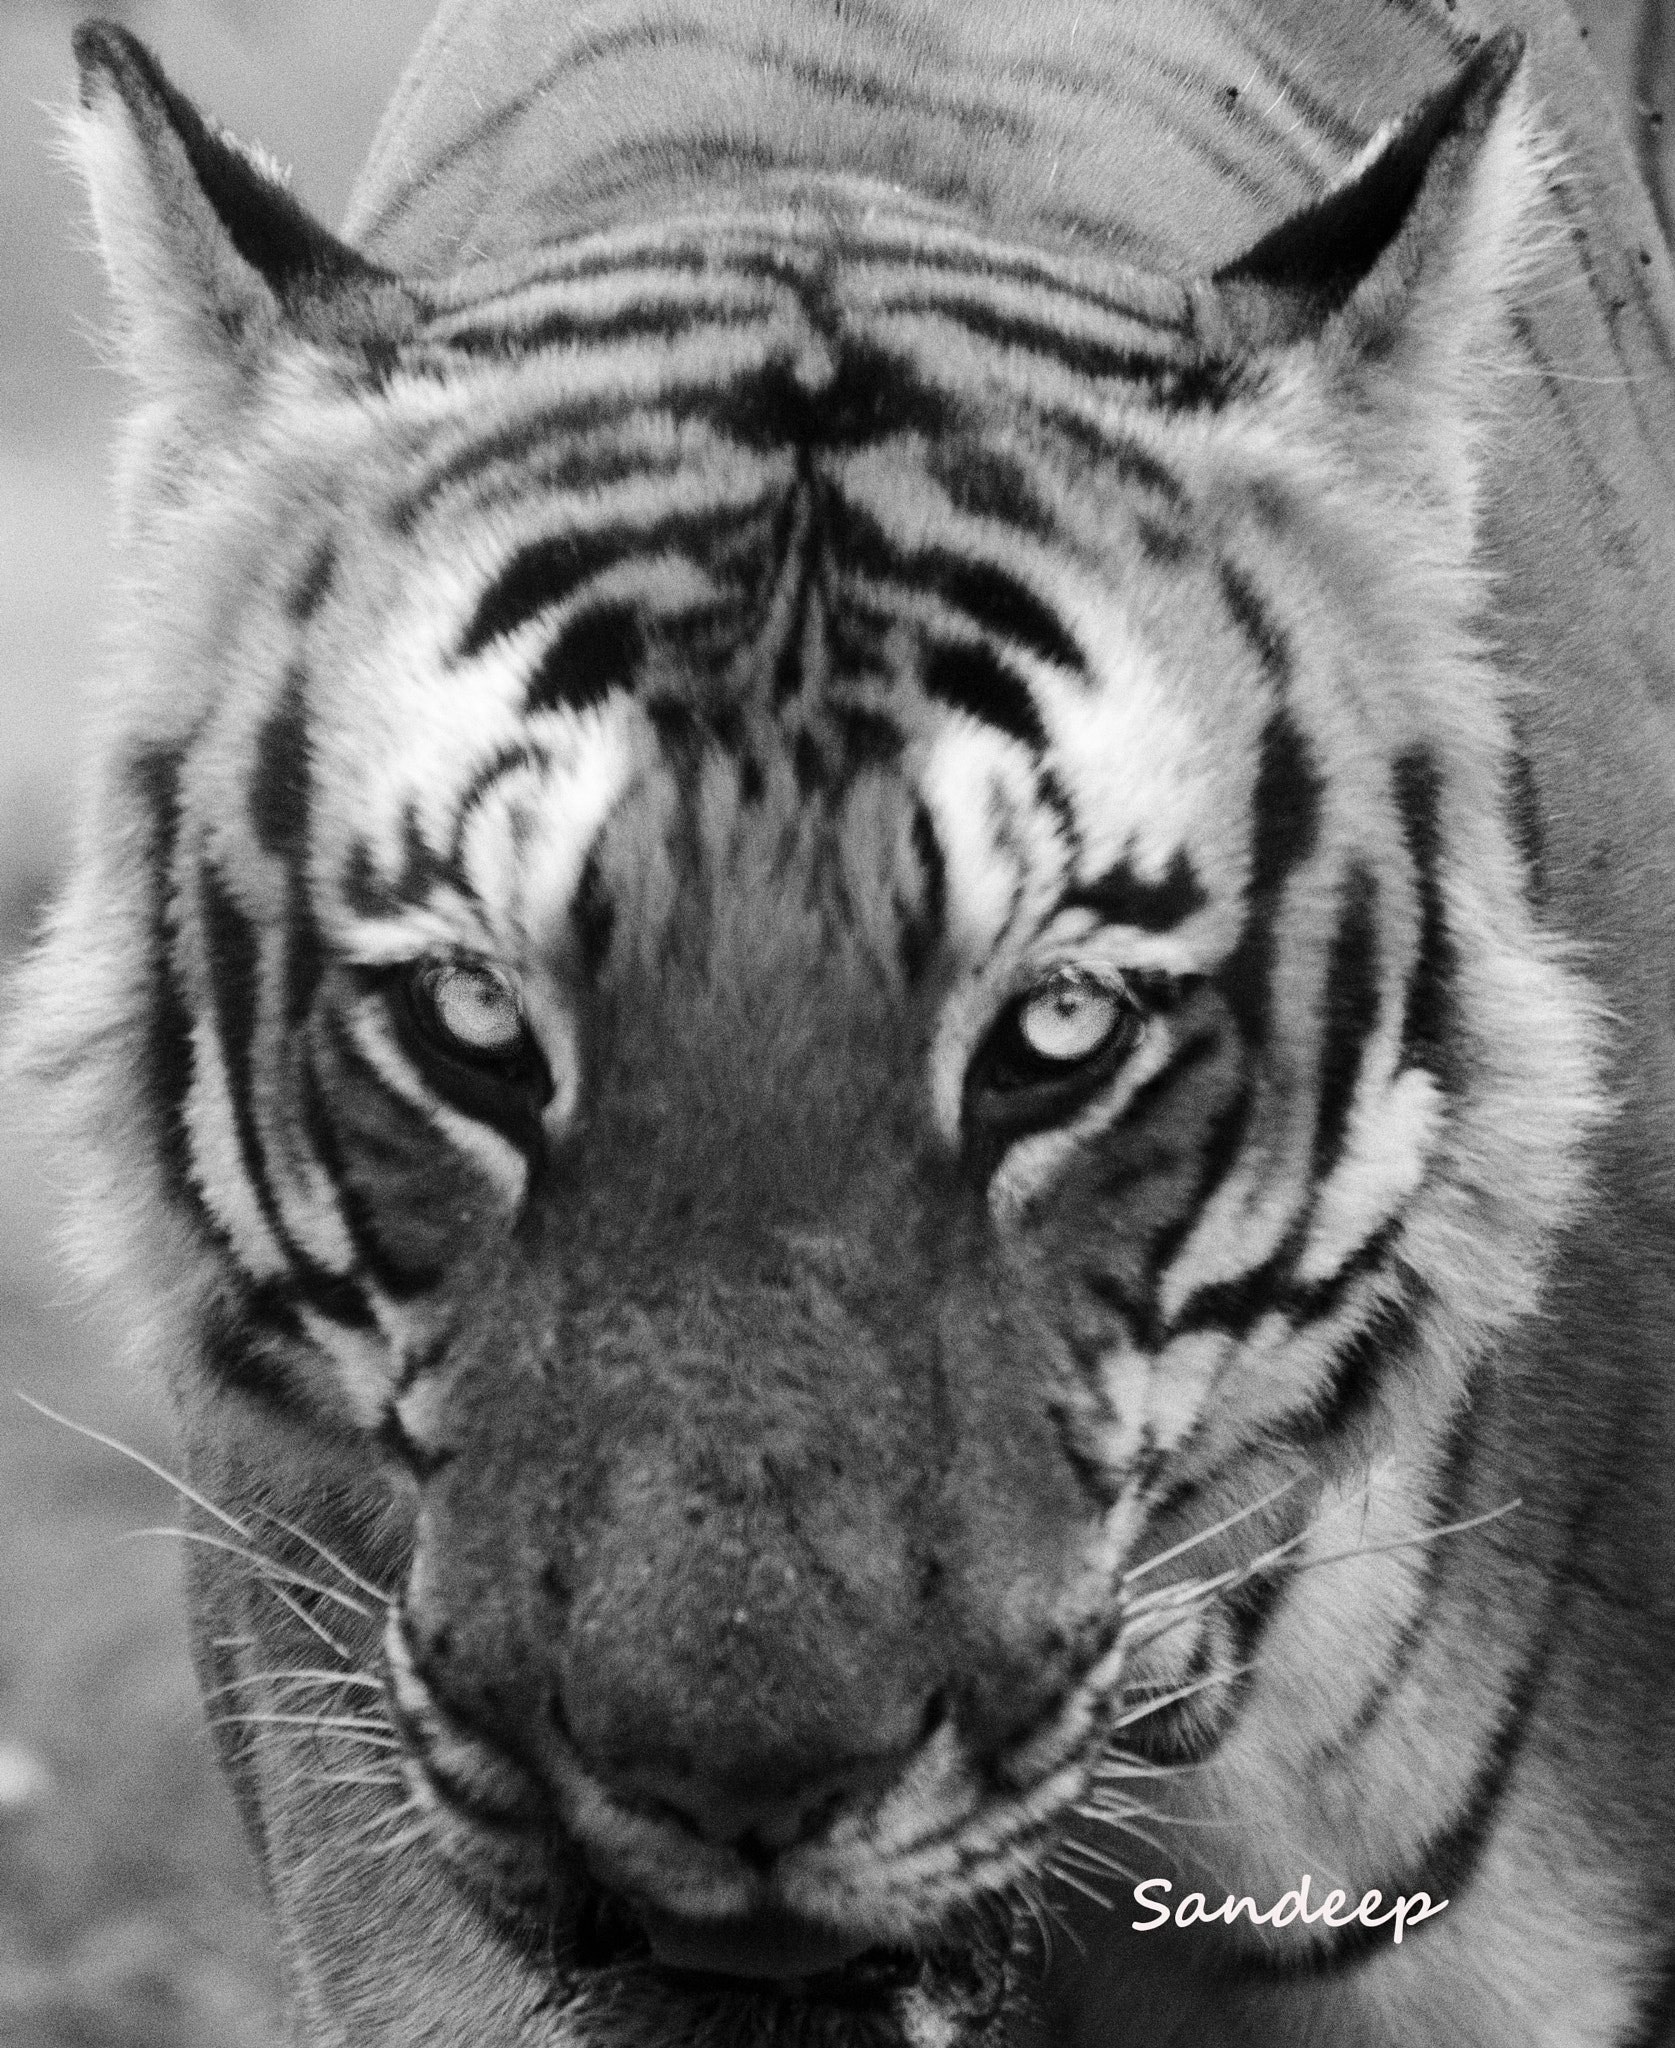 Nikon D610 + Nikon Nikkor AF-S 300mm F4E PF ED VR sample photo. Eye of the tiger photography